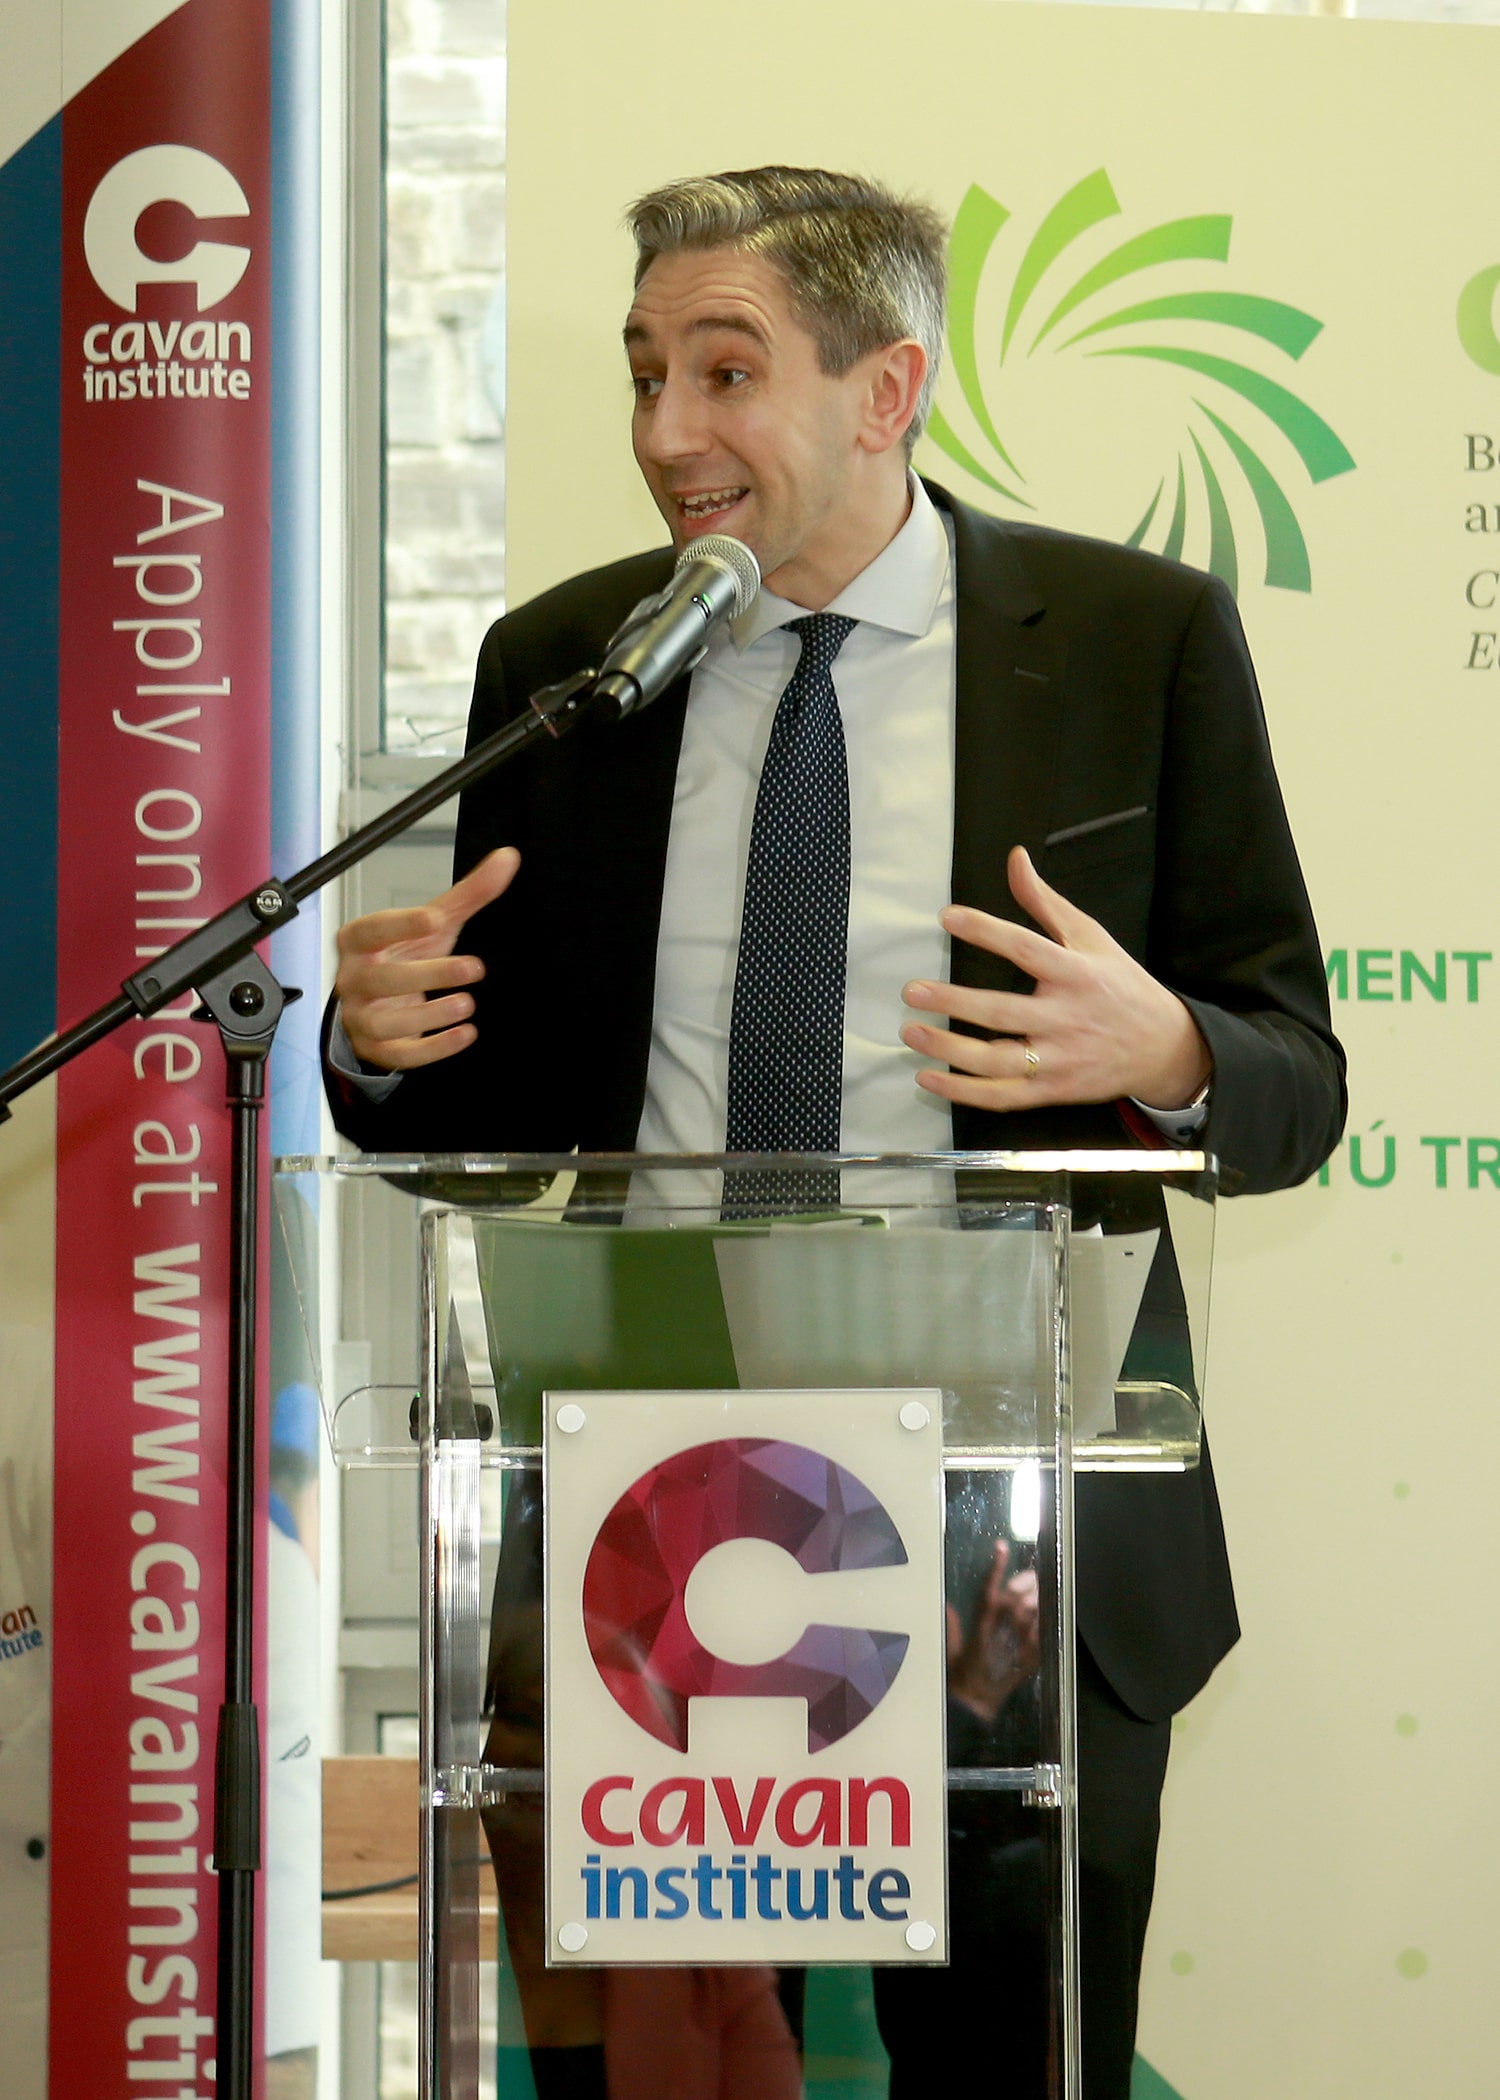 Minister Harris visits Cavan Institute